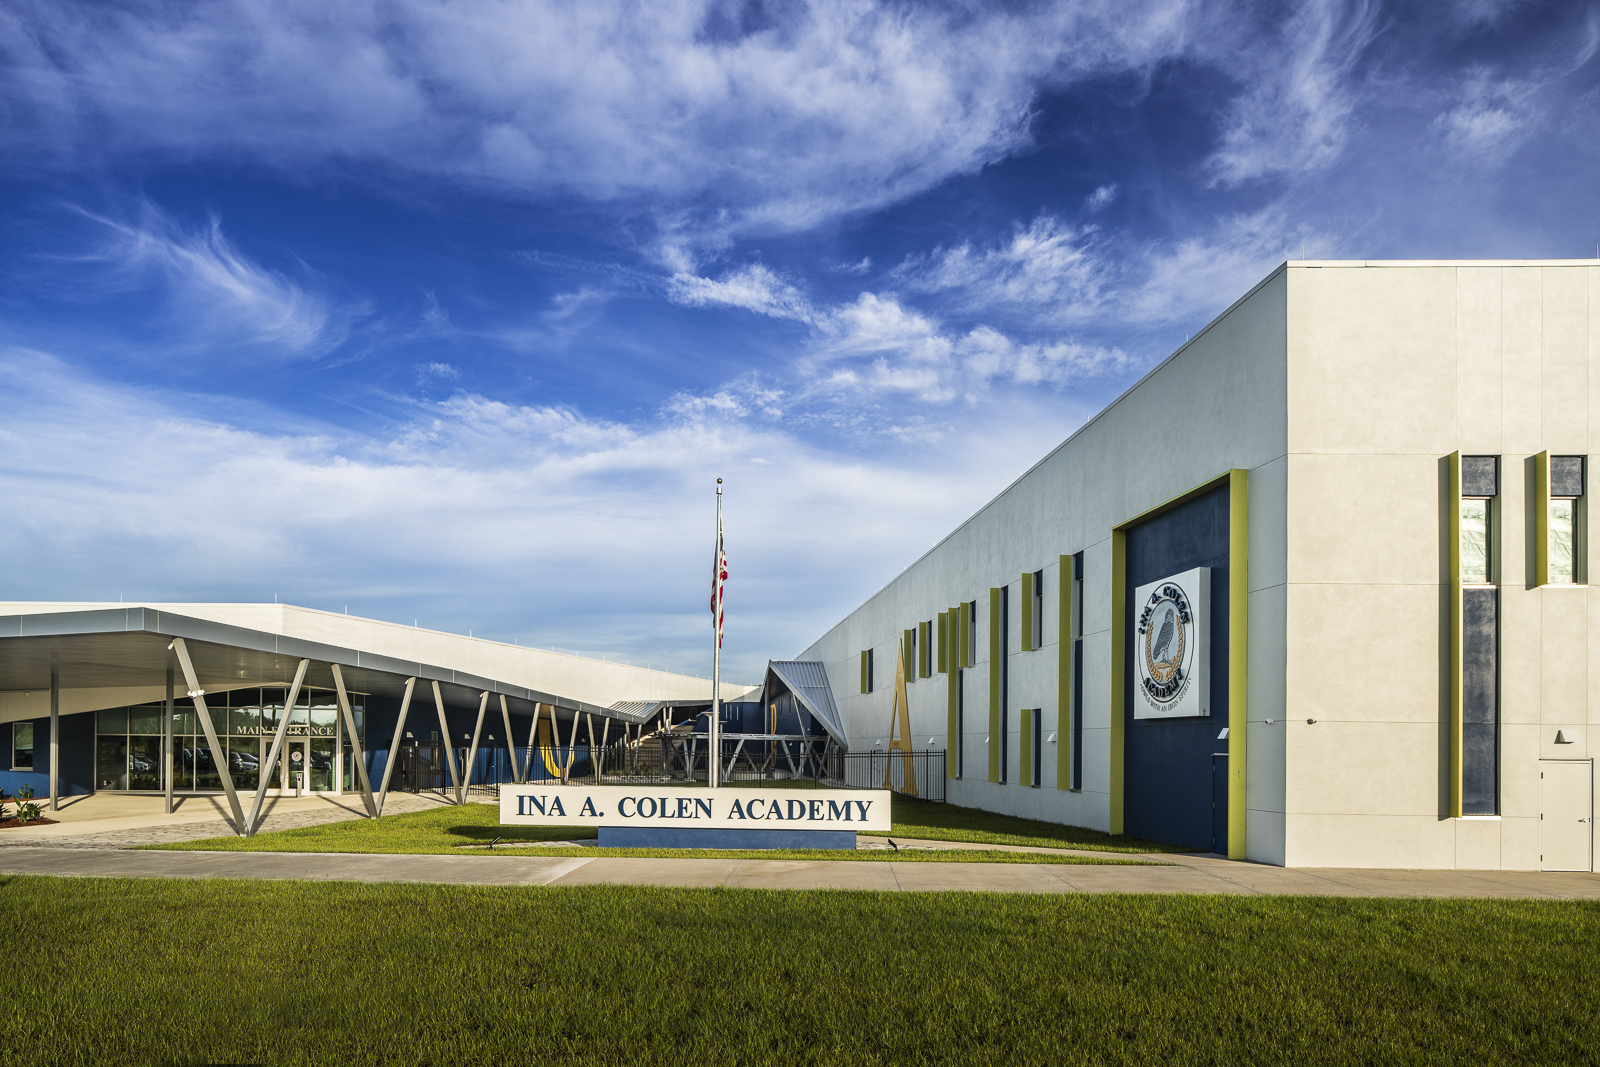 Ina A. Colen Academy